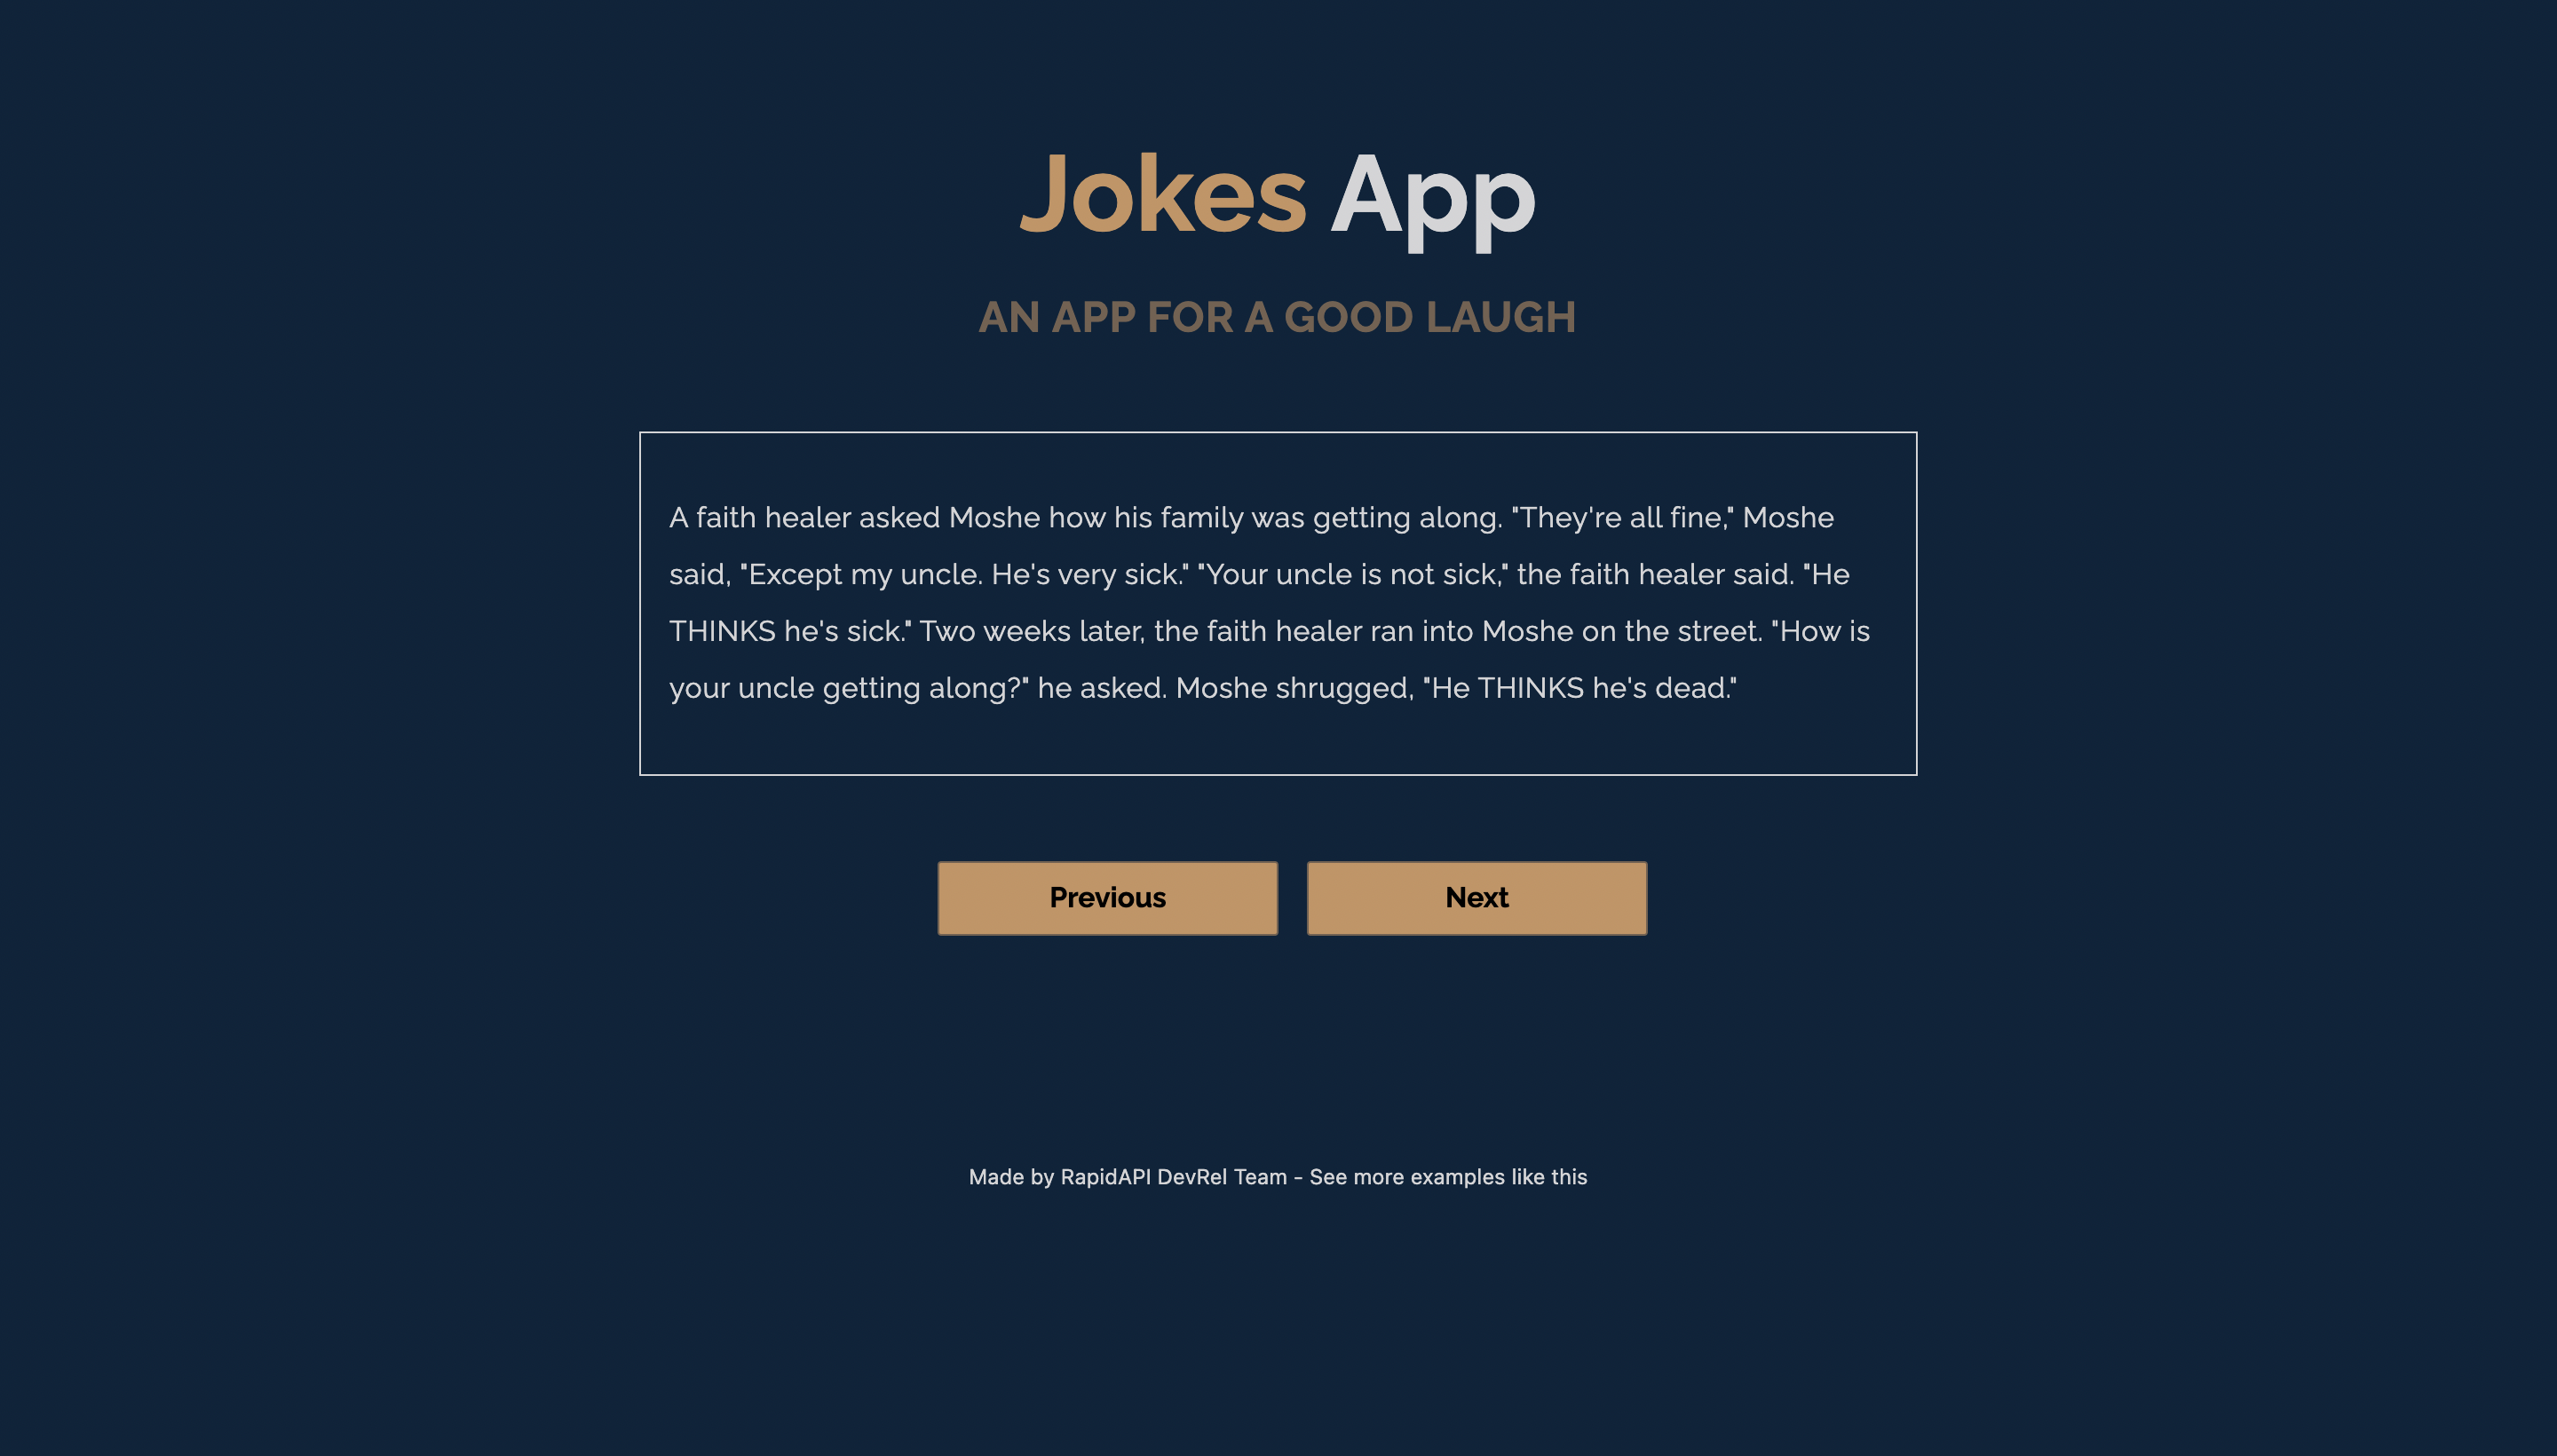 Joke App built with Next.js and Joke API